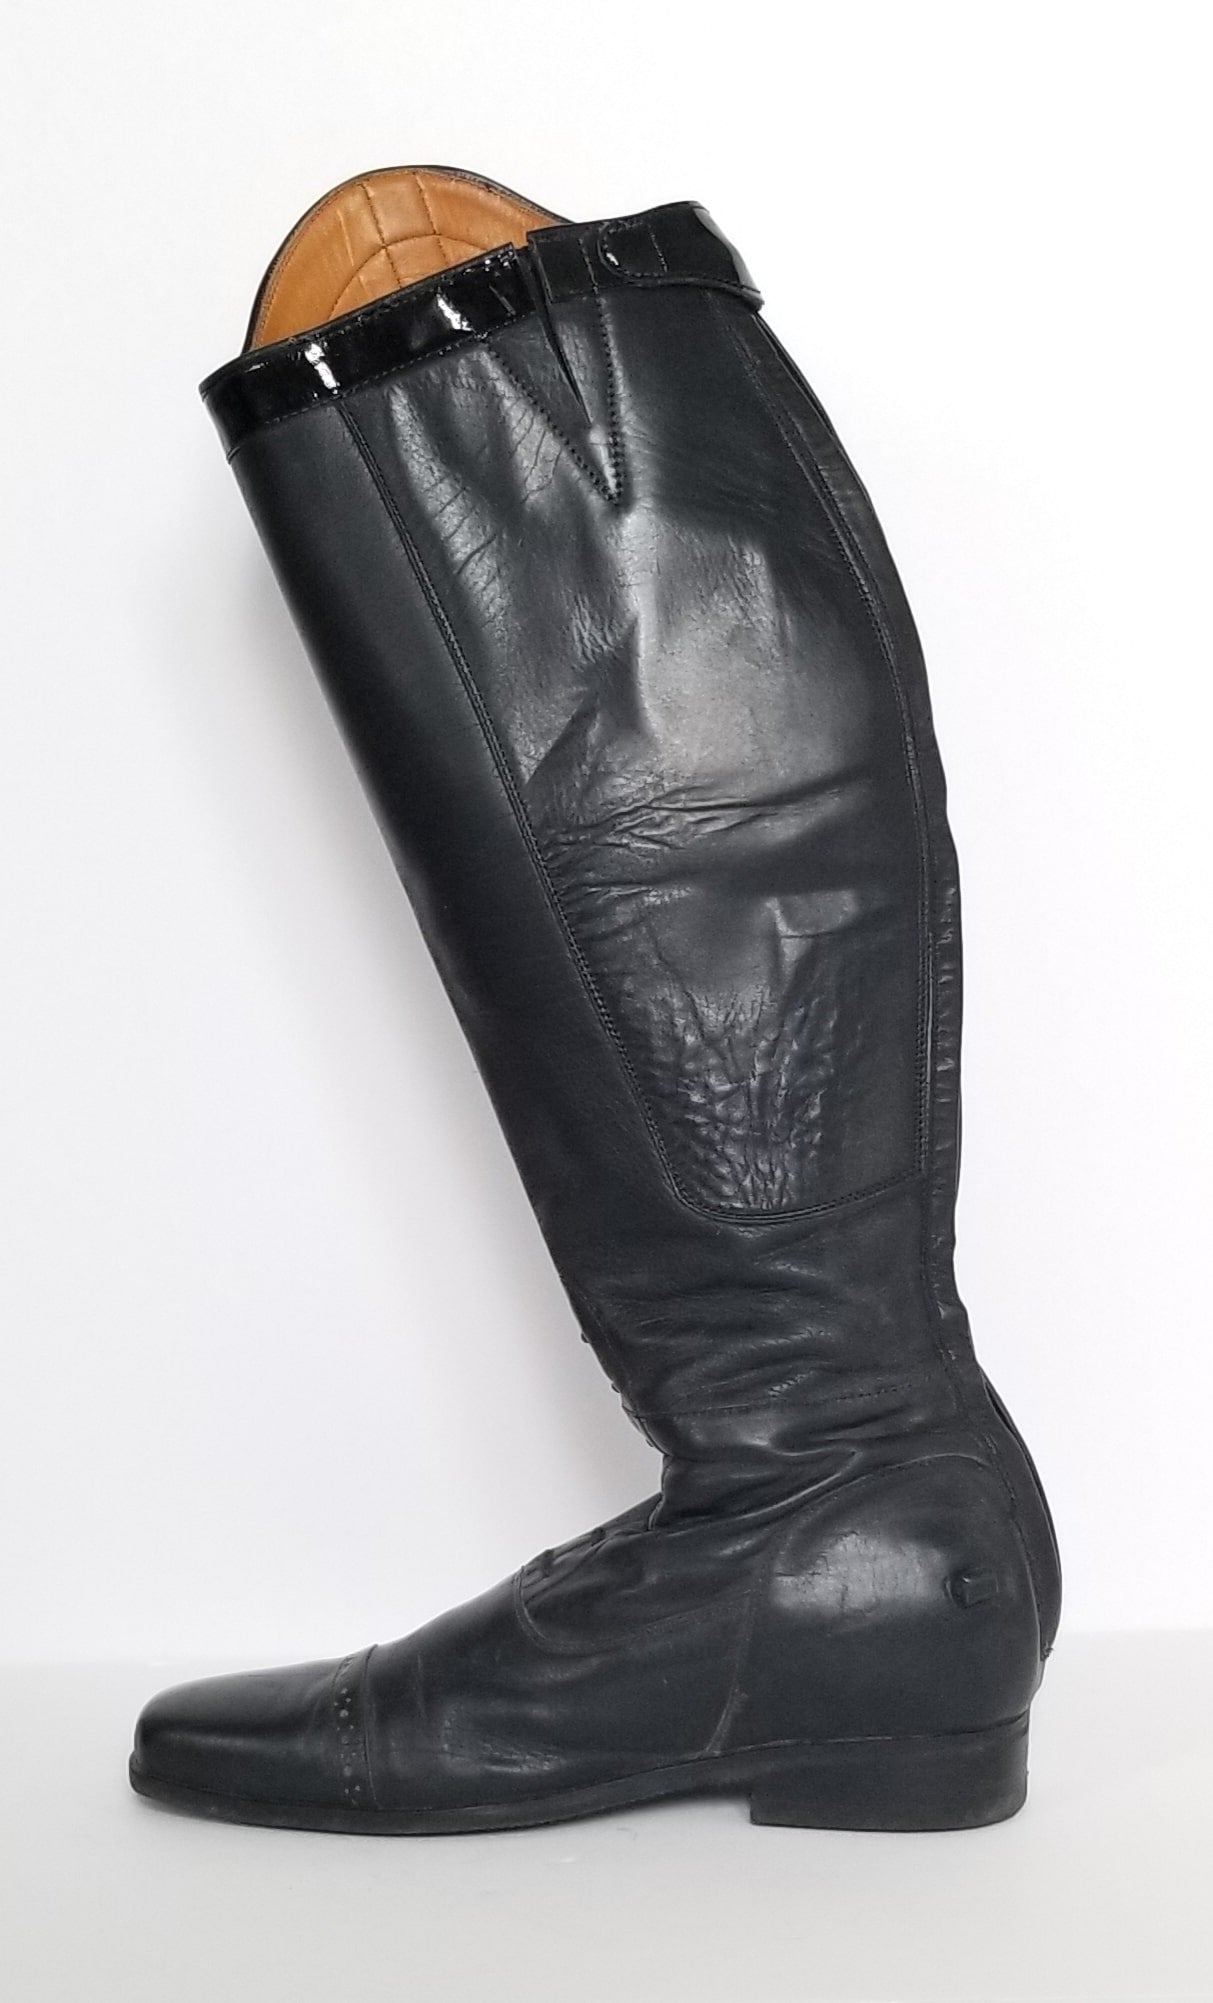 La Mundial Field Boots - Black - Women's Size 8